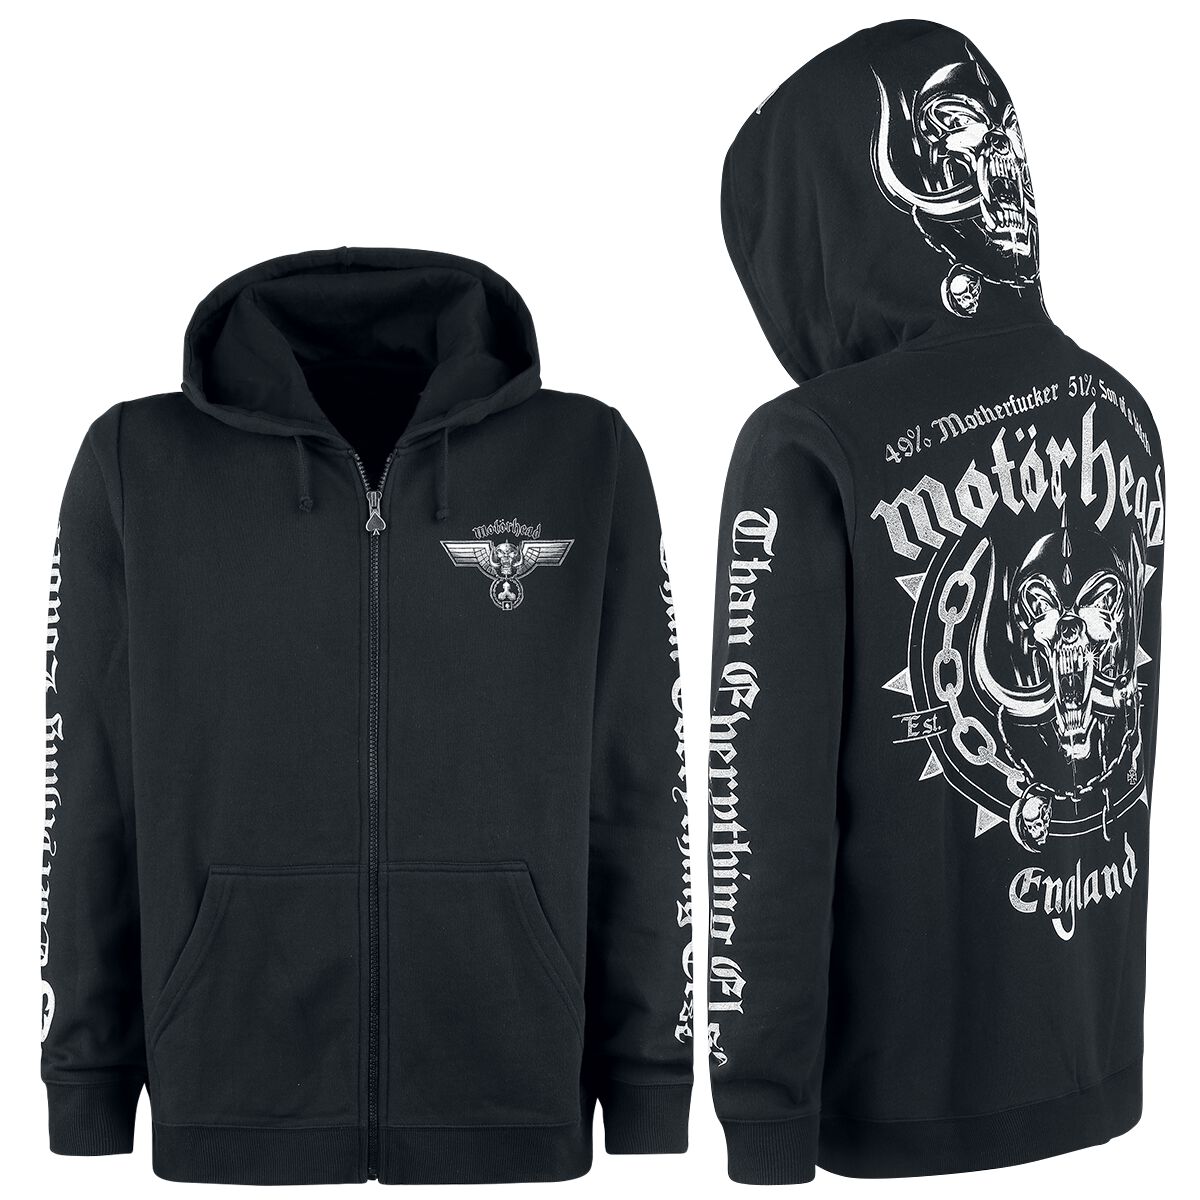 Motörhead Kapuzenjacke - England - M bis 3XL - für Männer - Größe L - schwarz  - EMP exklusives Merchandise!